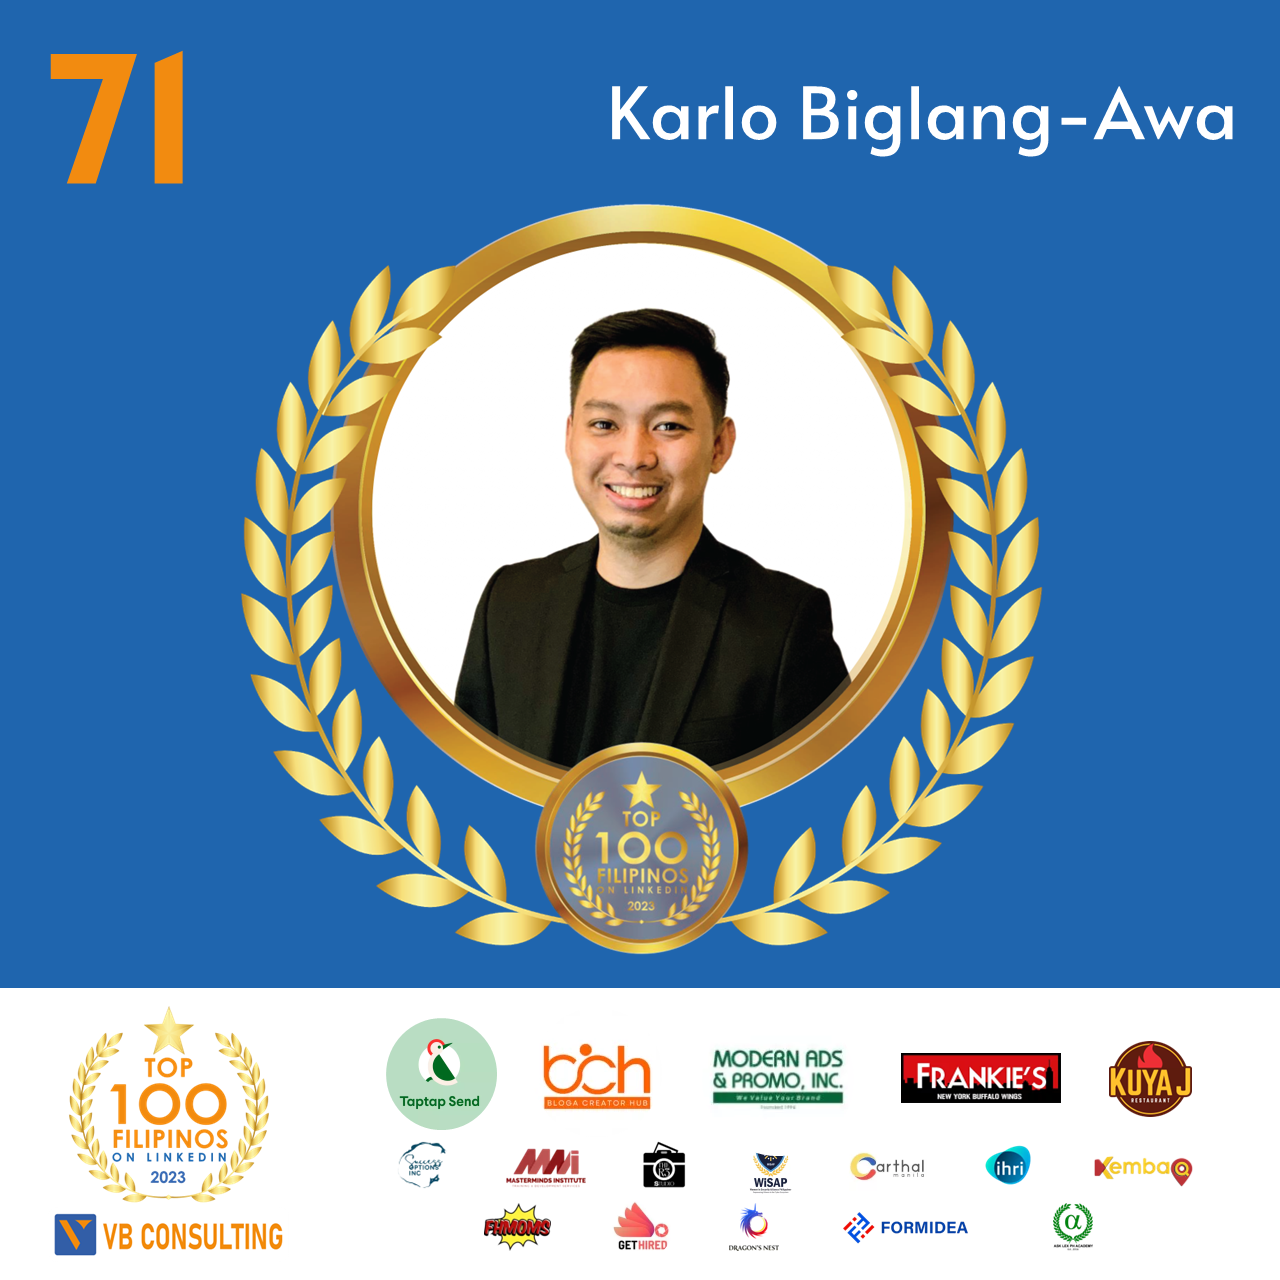 Karlo Biglang-Awa